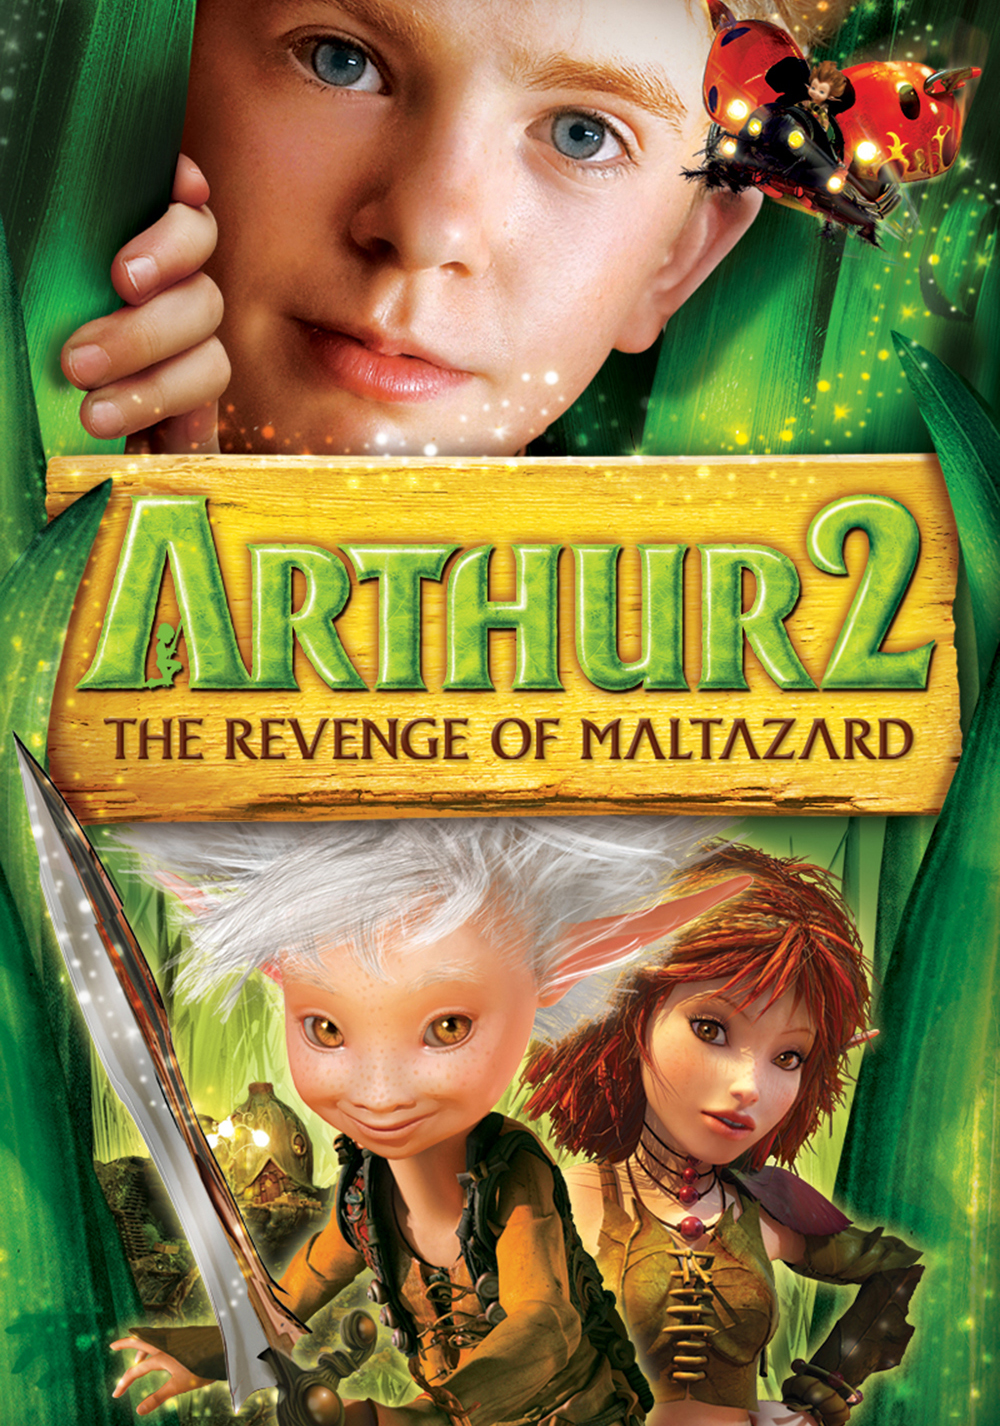 Arthur et la vengeance de Maltazard (2009) - IMDb